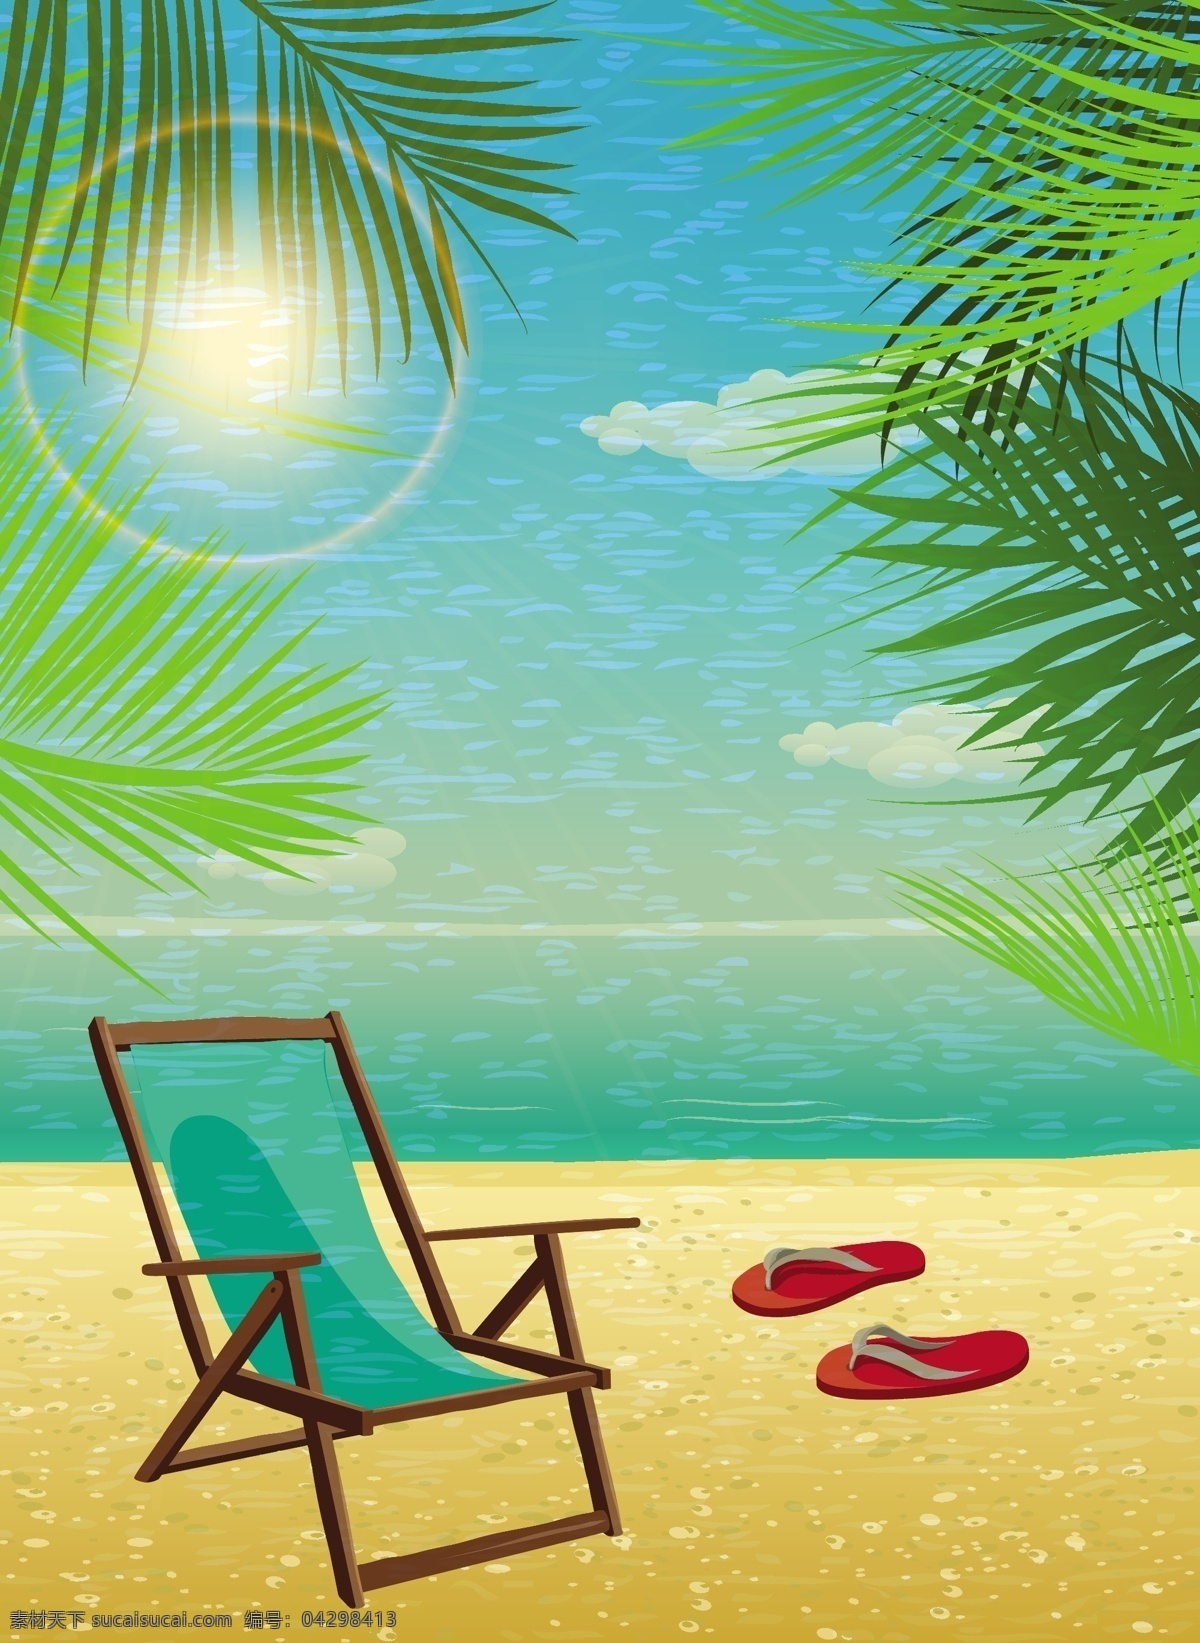 卡通 海滩 风景 插画 夏日海滩风景 椰树 椰树插画 夏日主题插画 自然风光 空间环境 矢量素材 青色 天蓝色